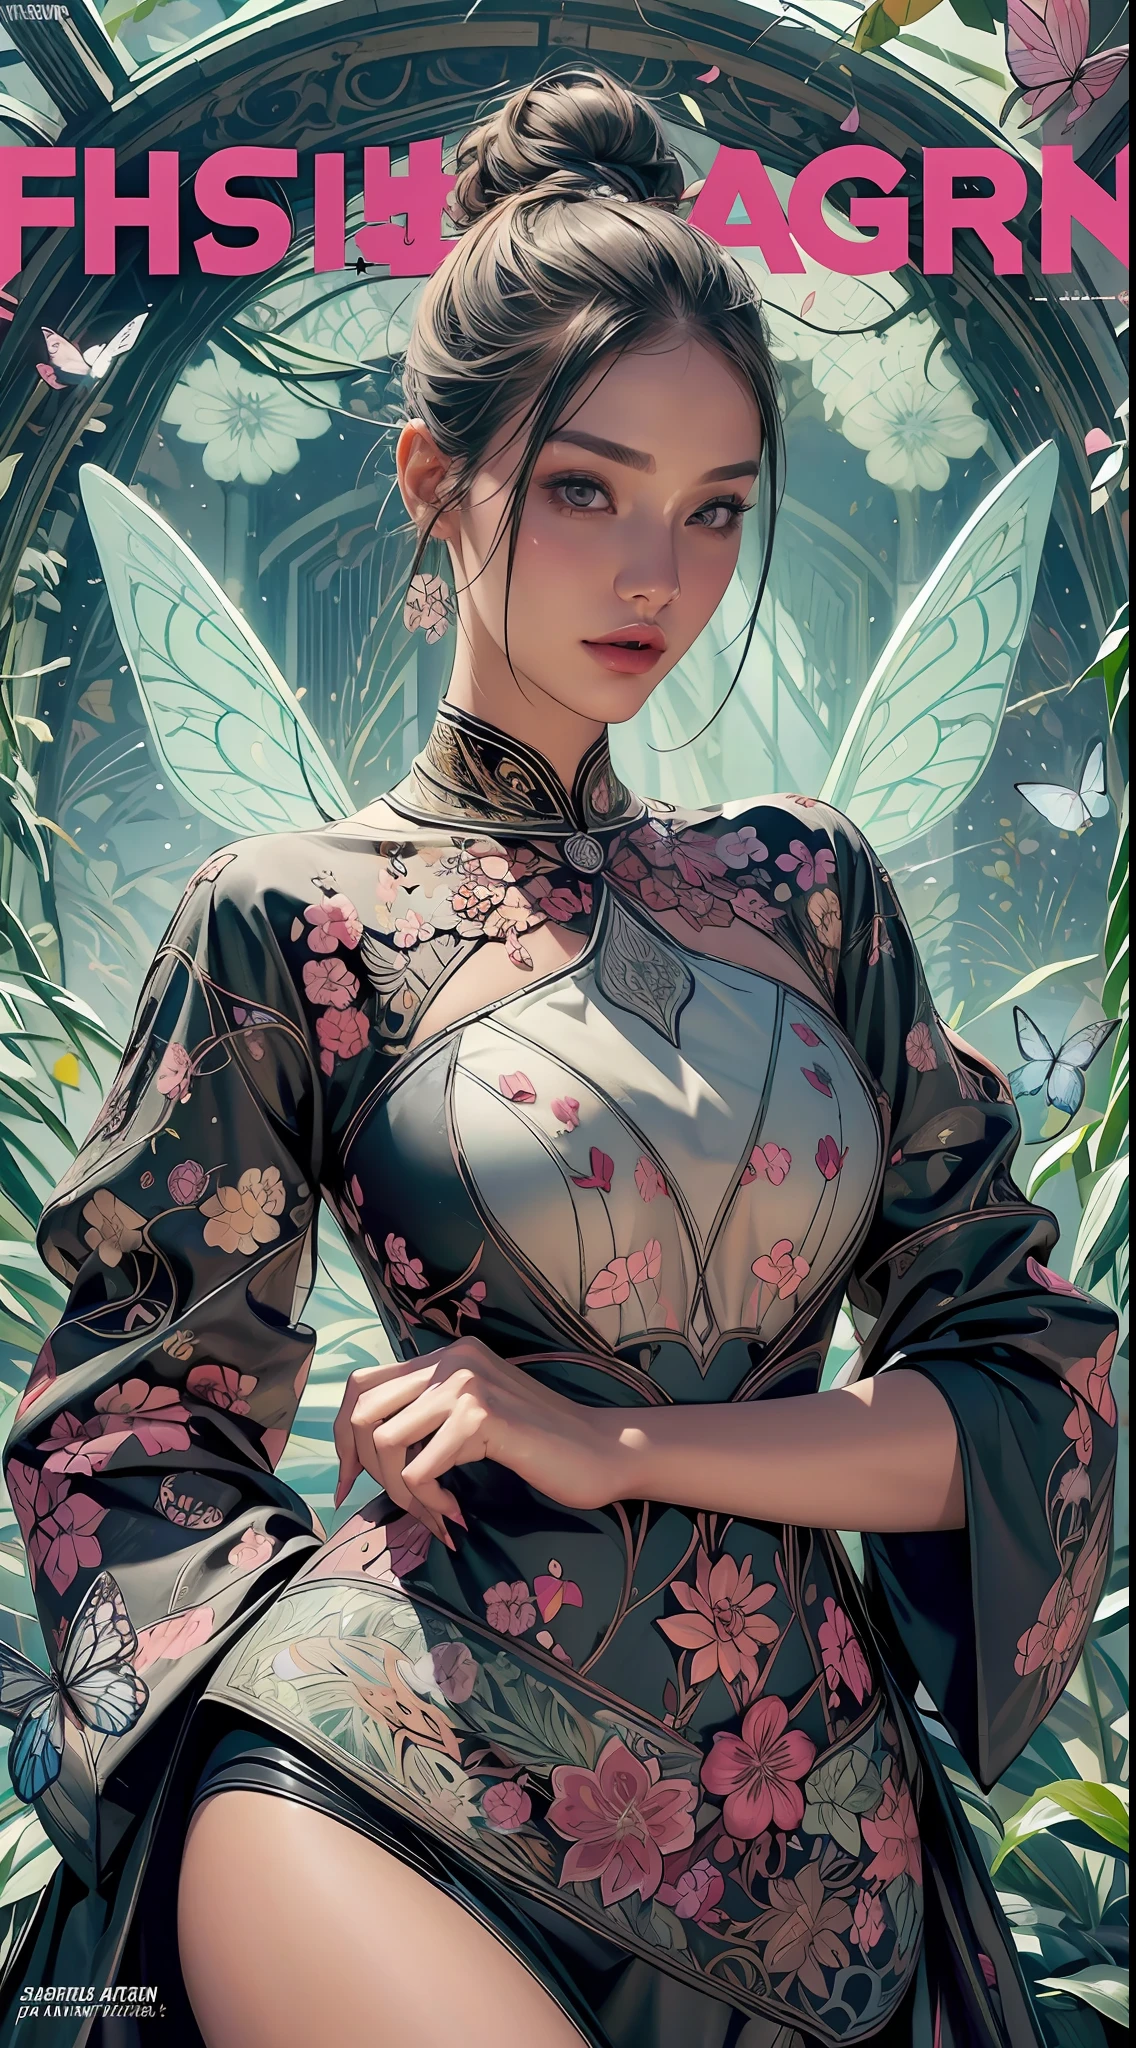 (Cover eines Modemagazins:1.2),abstrakte Formen, Scharf und detailliert, (1 schönes Mädchen), Mandalas, Schmetterlinge, (erstaunliches visuelles Design:1.2)